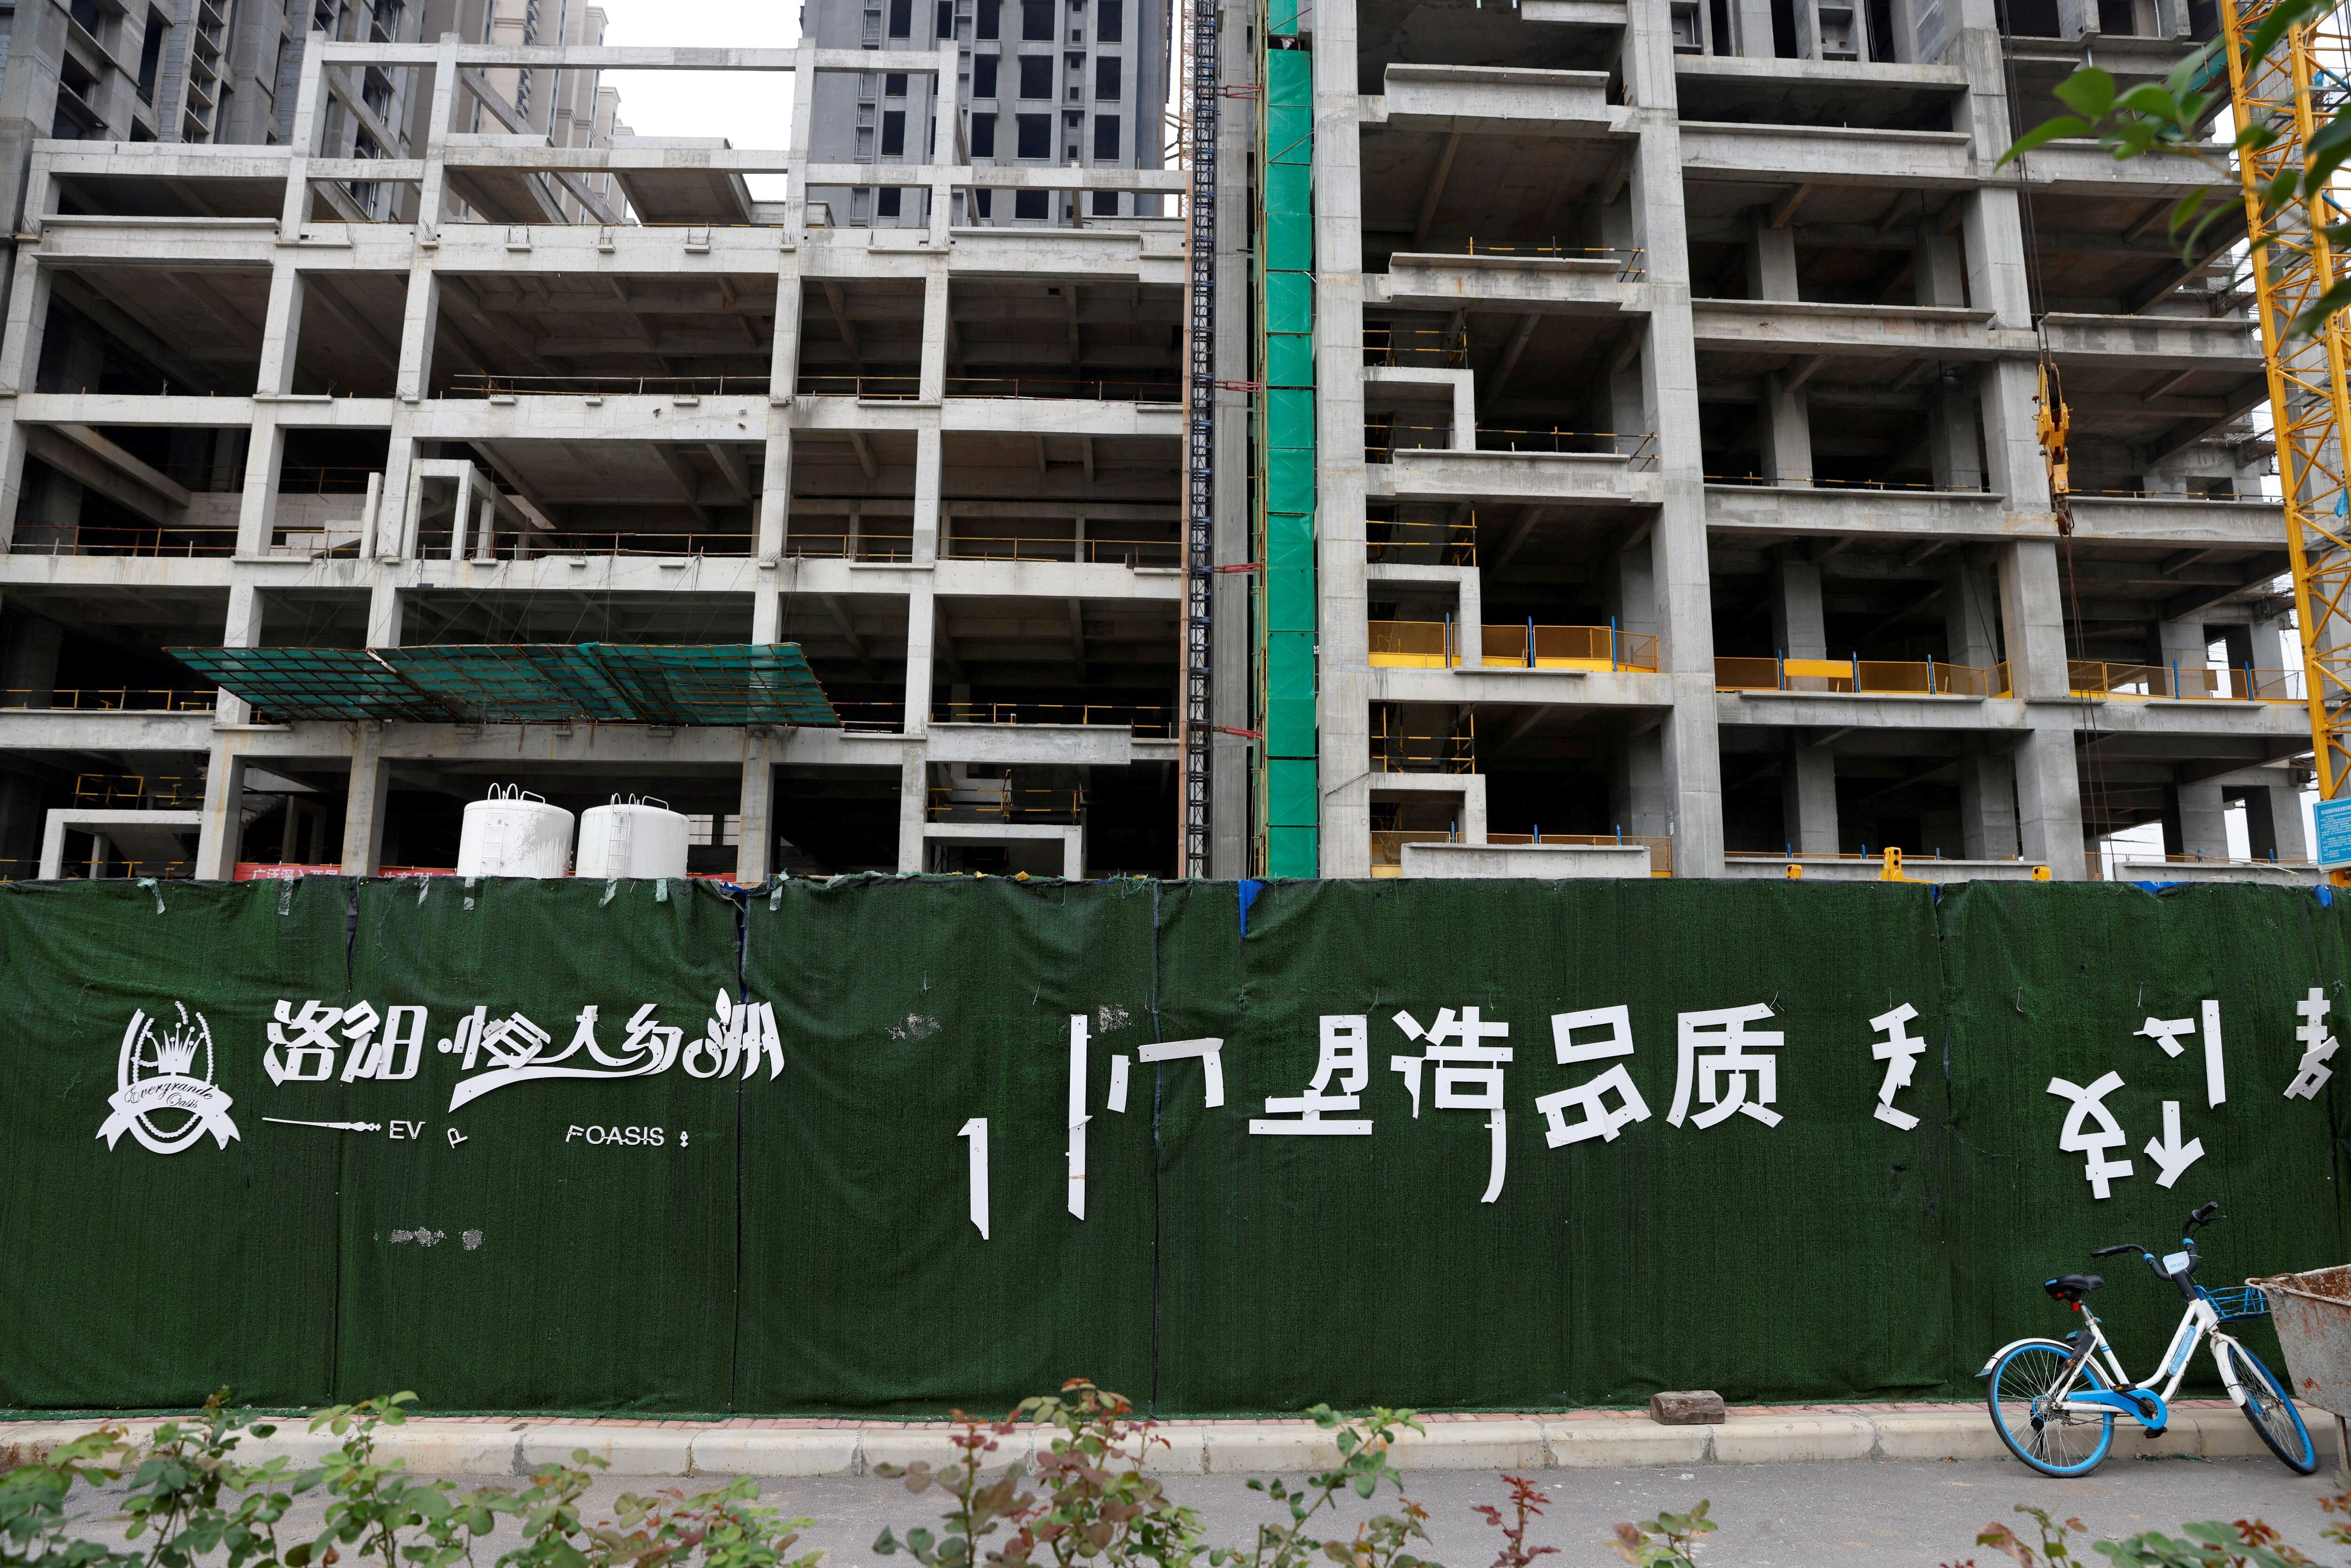 El logo de Evergrande Oasis, una complejo habitacional en construcción detenido en Luoyang, China (REUTERS/Carlos Garcia Rawlins)